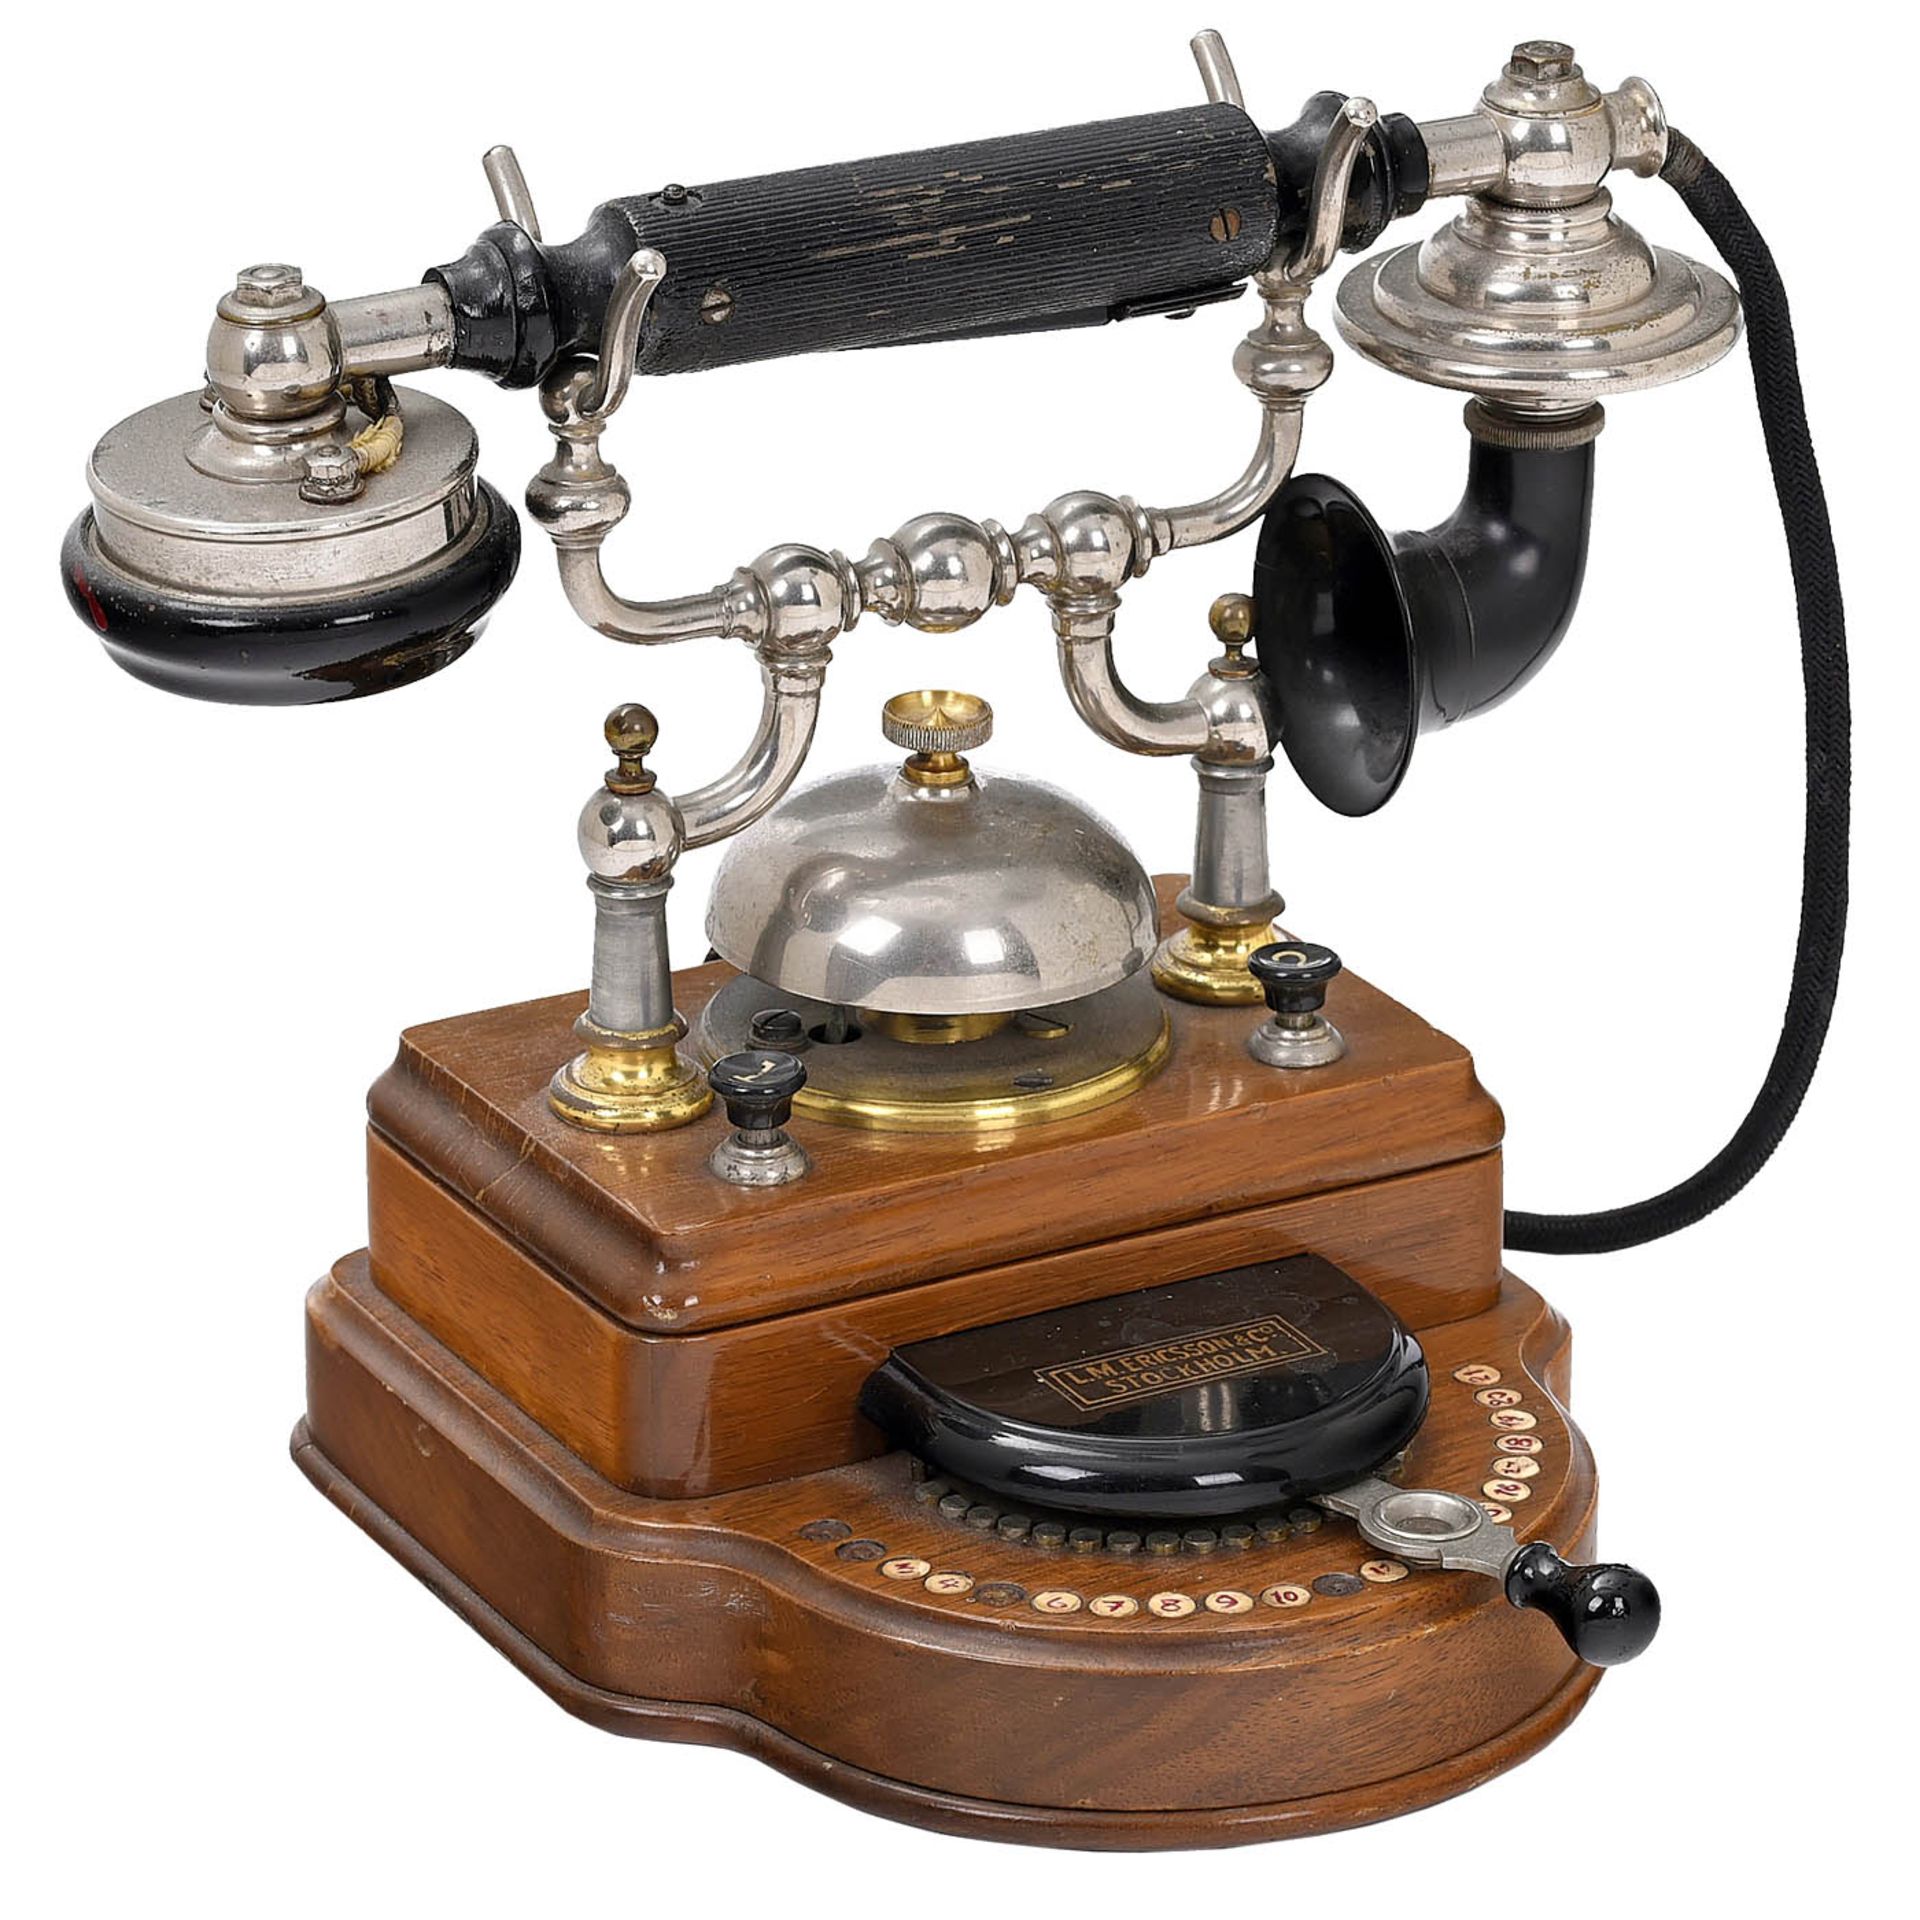 2 Ericsson Intercom Telephones, c. 1910 - Image 2 of 3